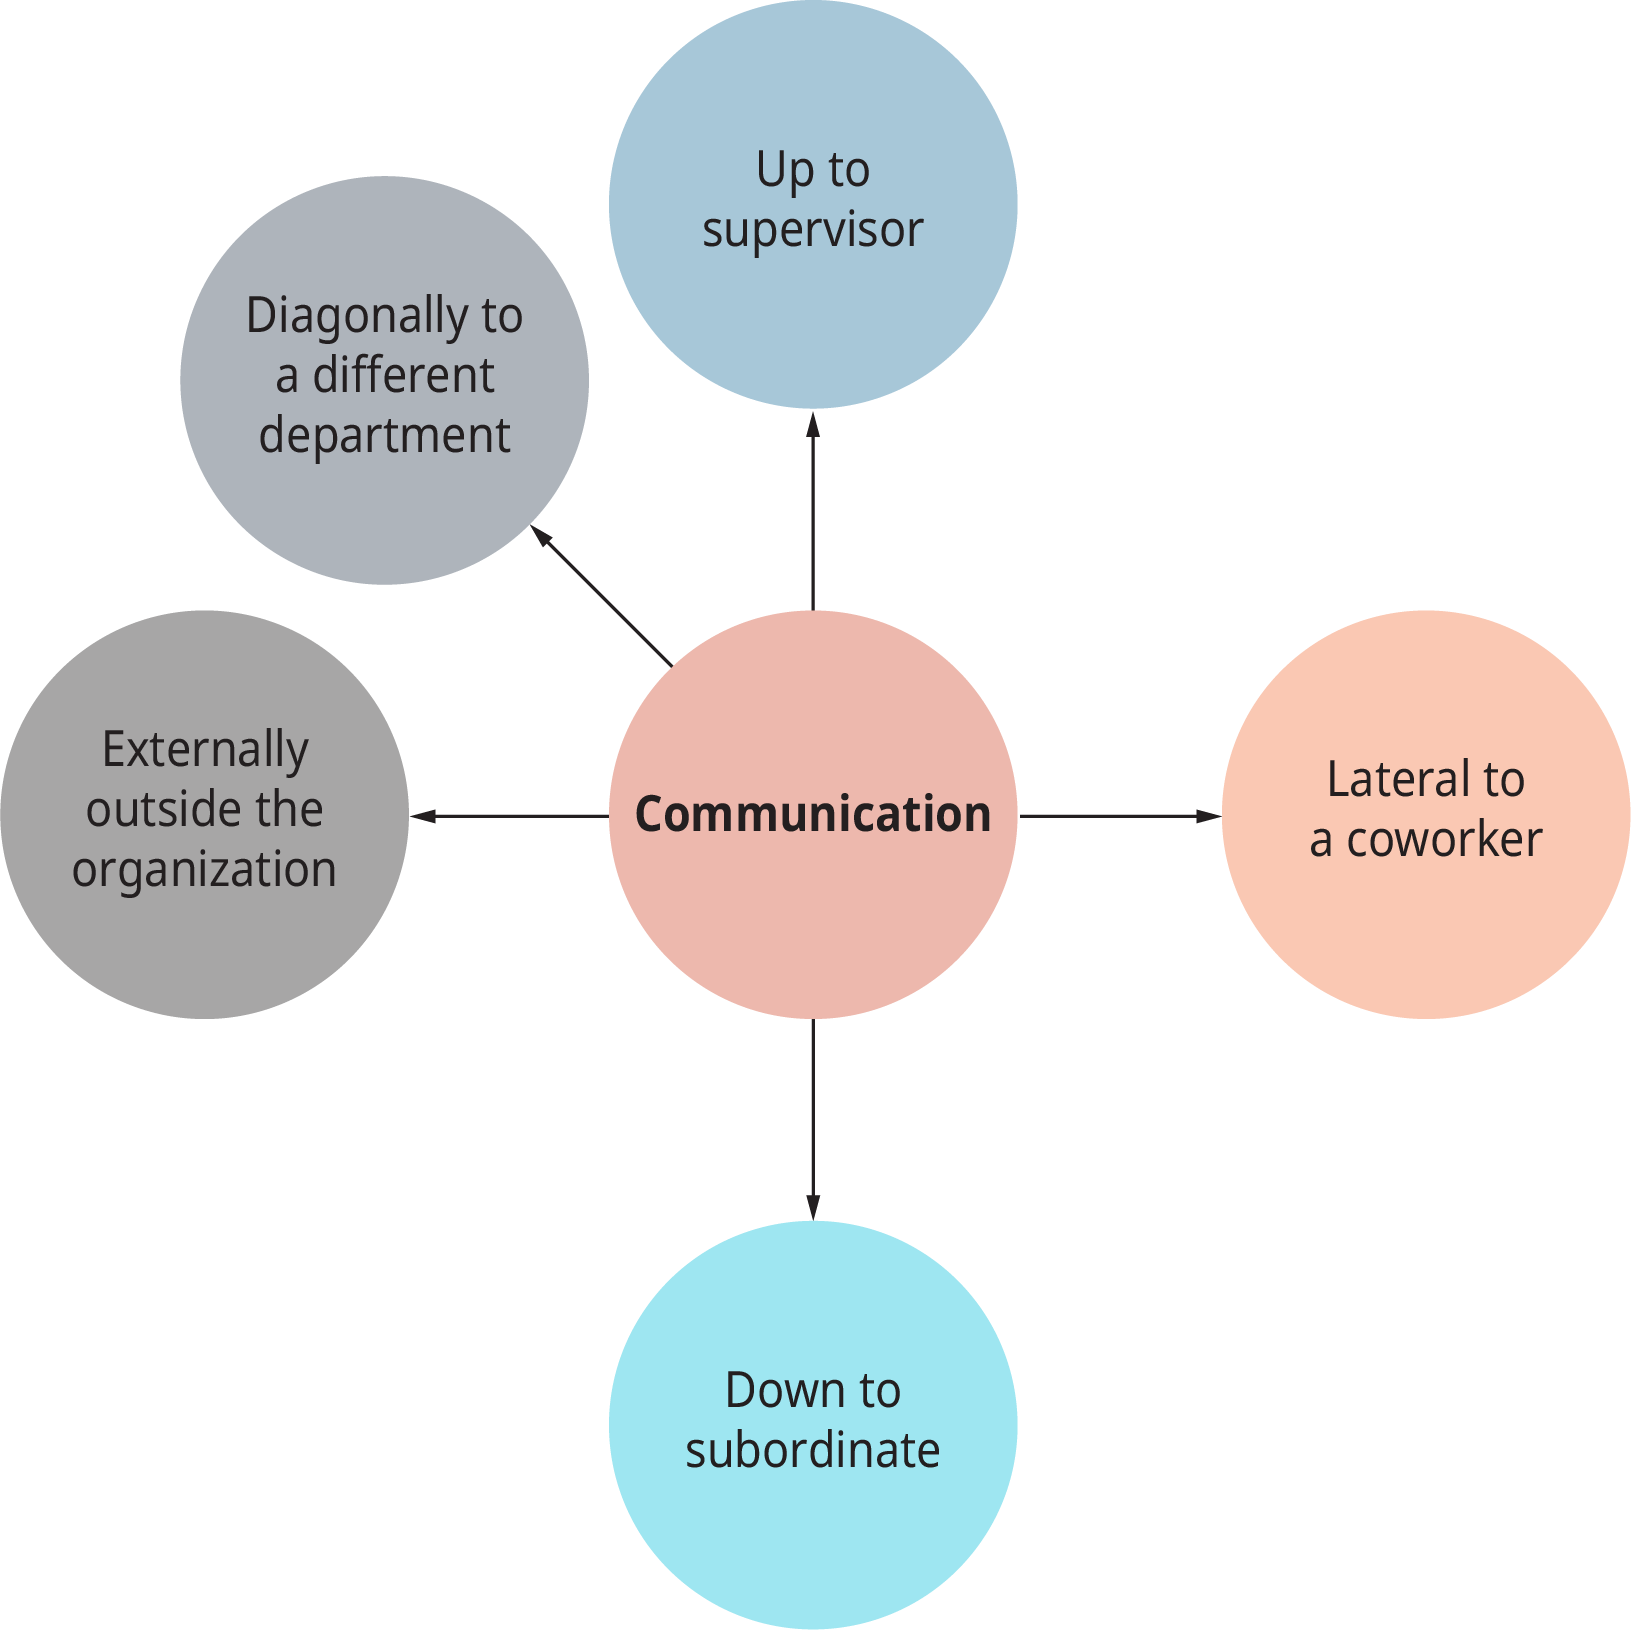 يُظهر الرسم التخطيطي مجموعة متنوعة من الاتصالات التي توضح التأثيرات الاجتماعية في مكان العمل.